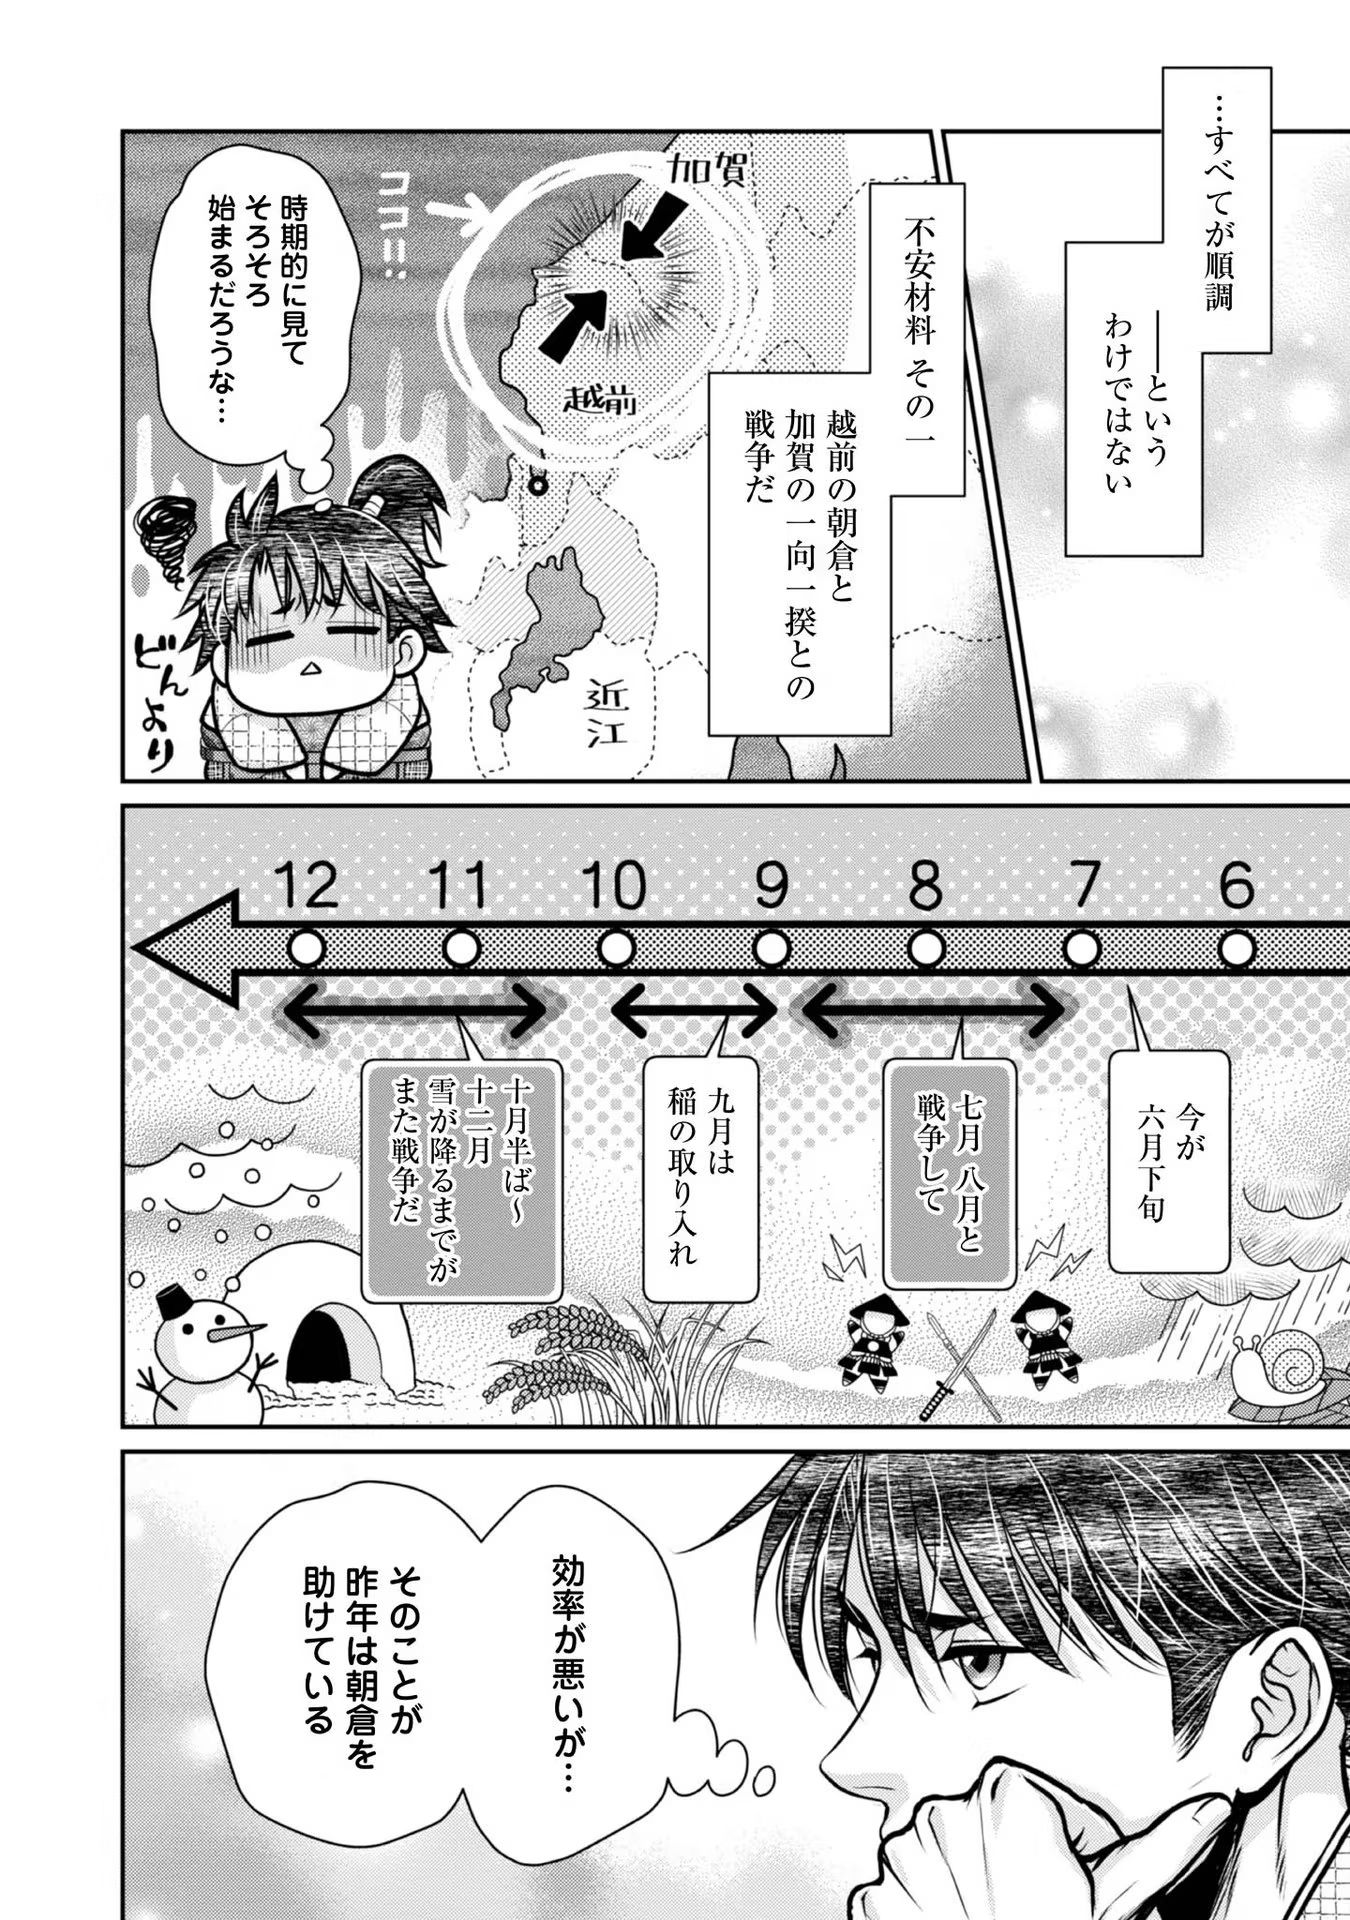 Afumi no Umi – Minamo ga Yureru Toki - Chapter 23 - Page 4